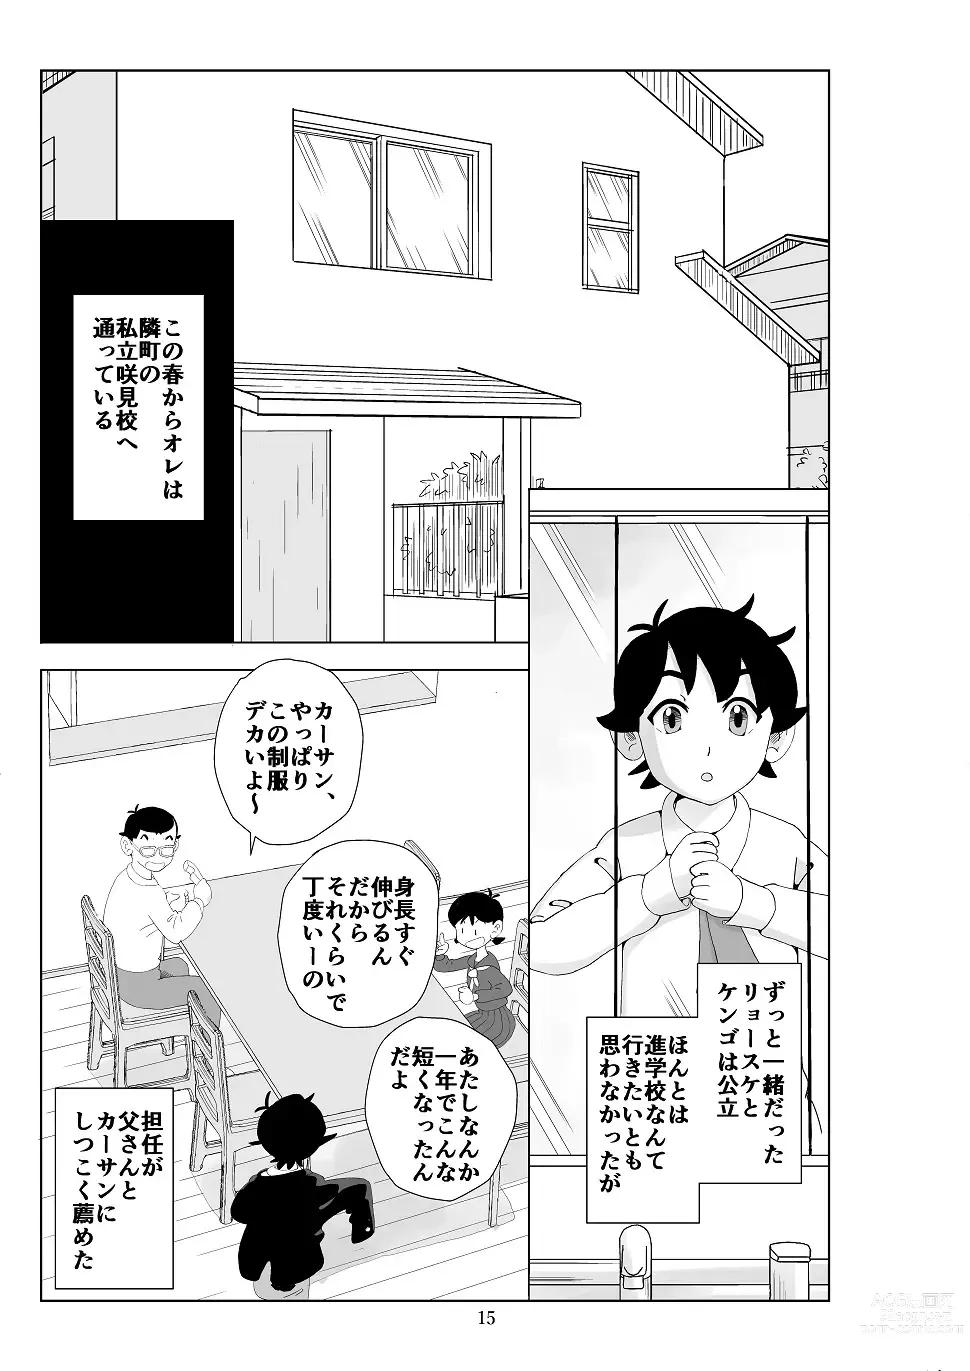 Page 16 of doujinshi Futoshi 3